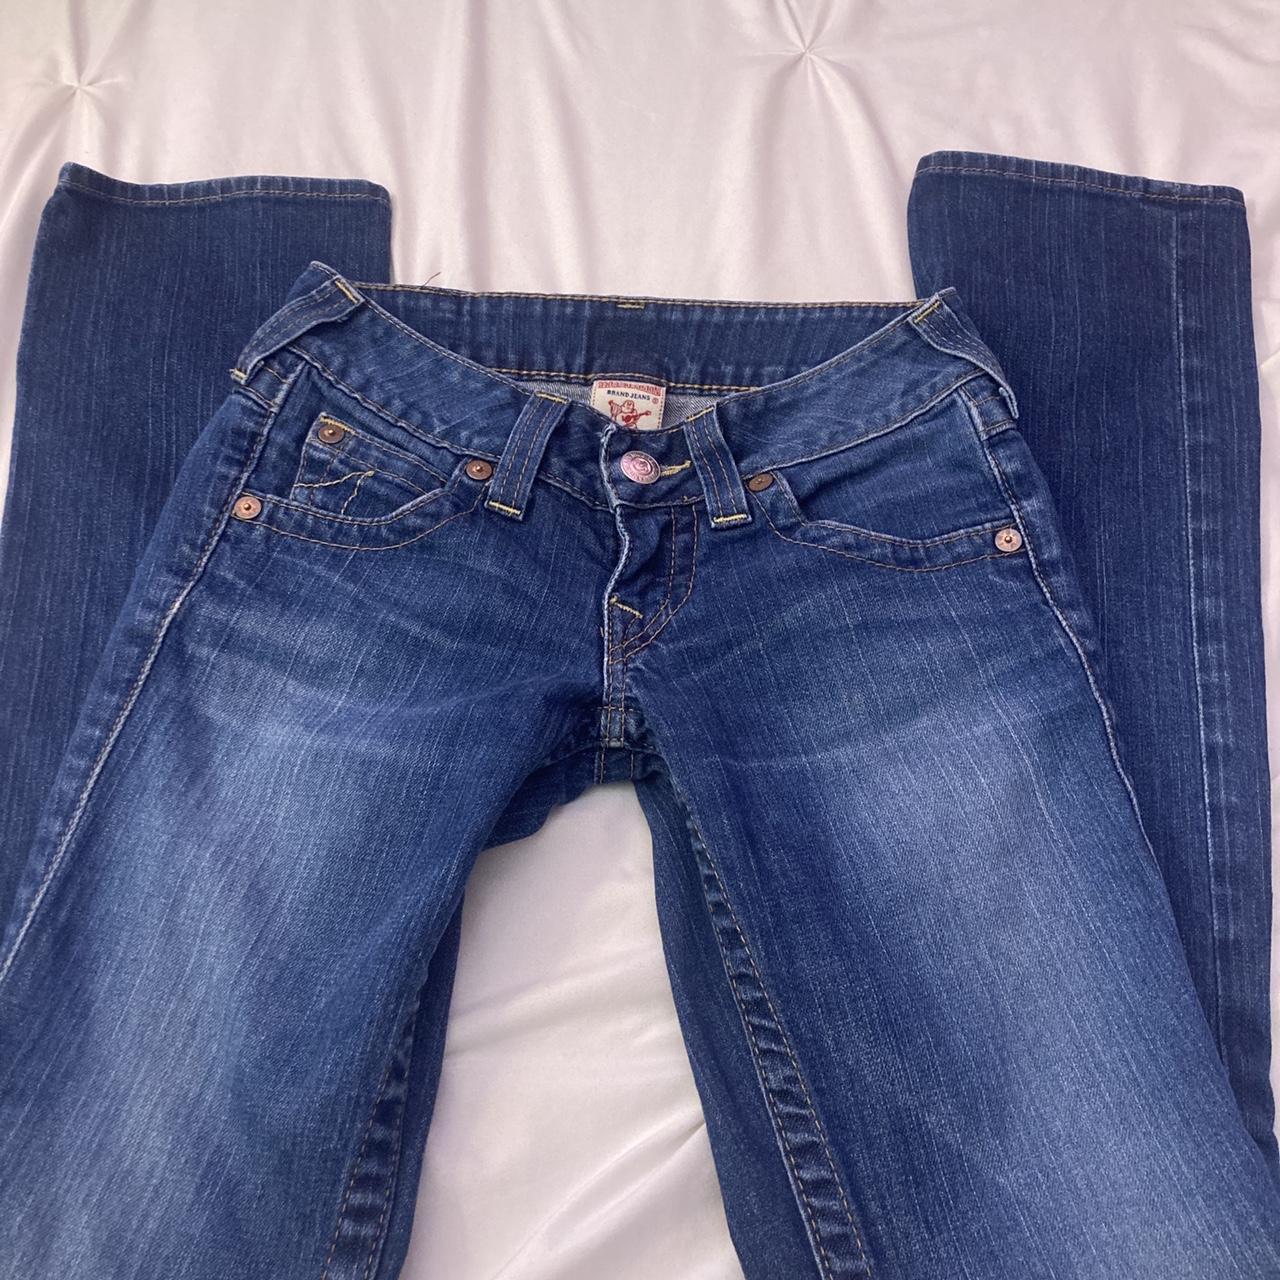 Vintage low-rise straight leg true religion jeans - Depop